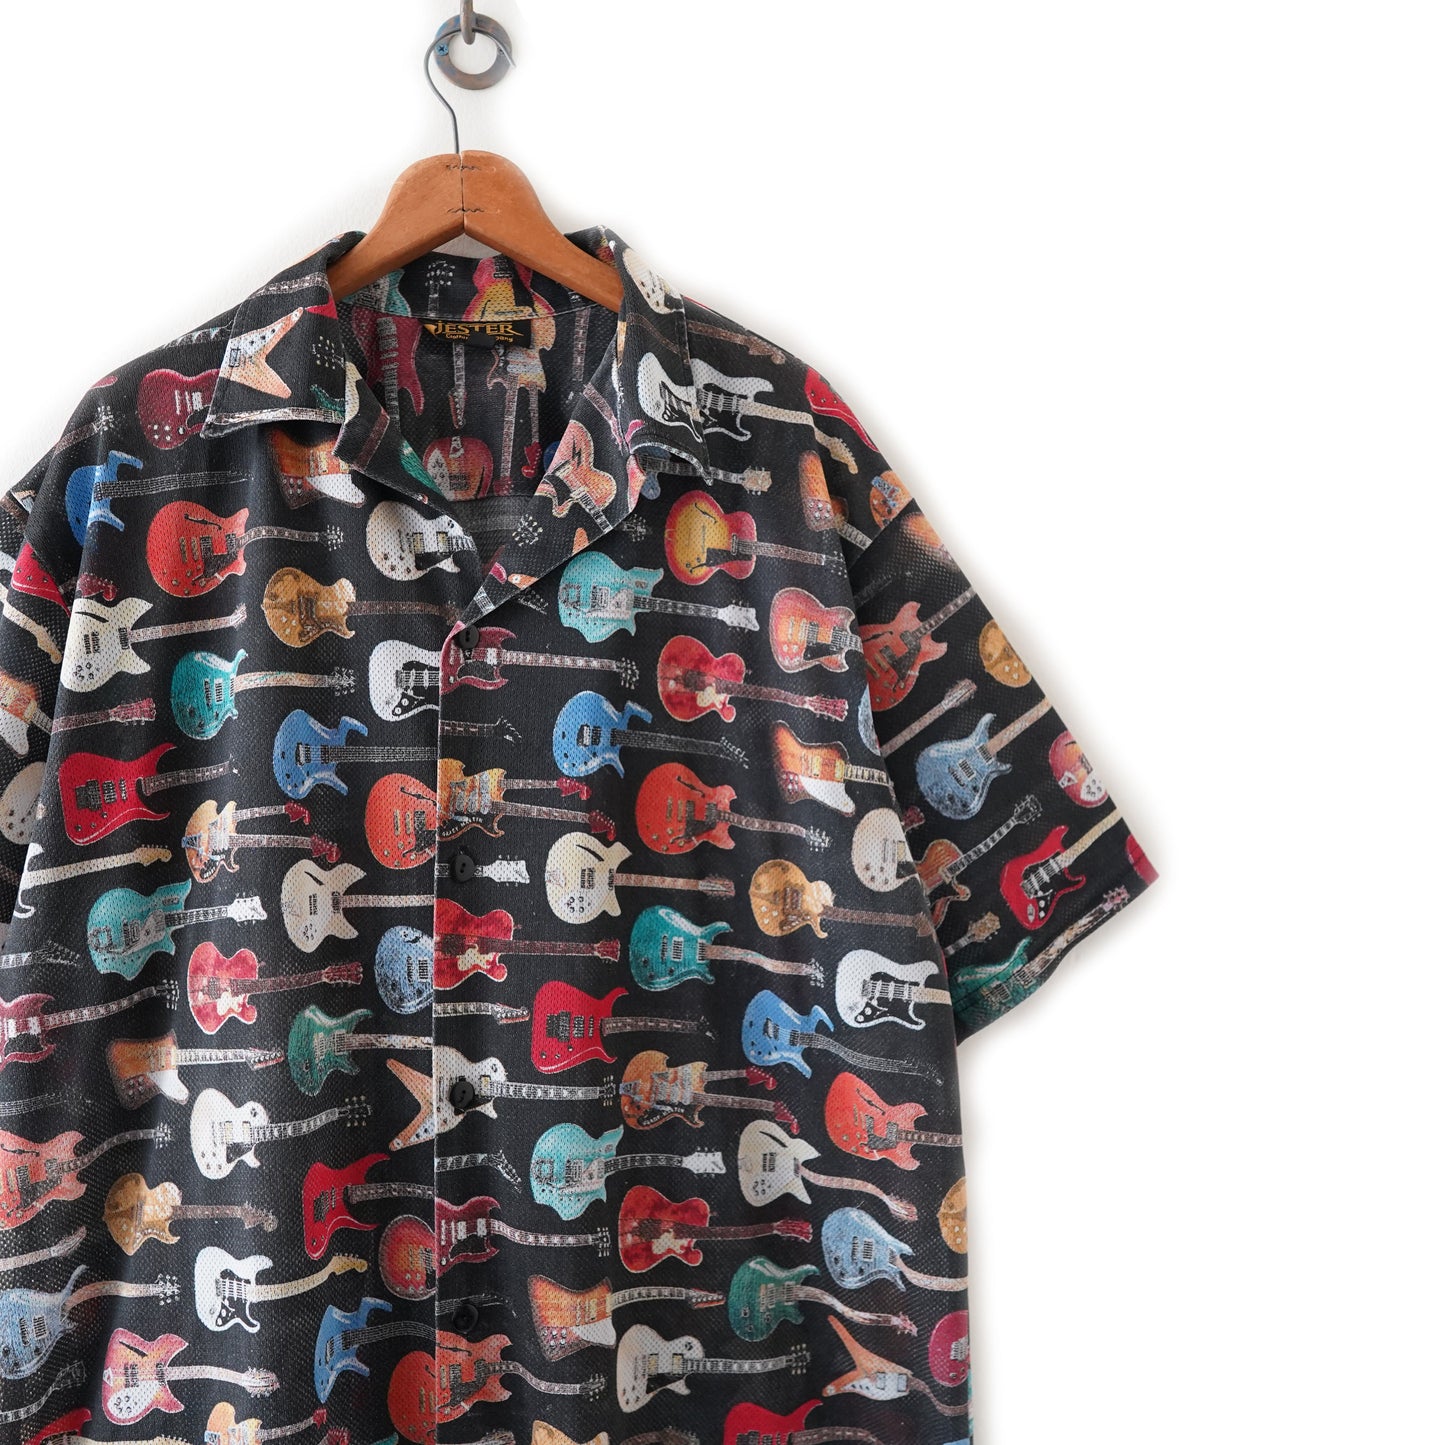 Guiter patterned shirt